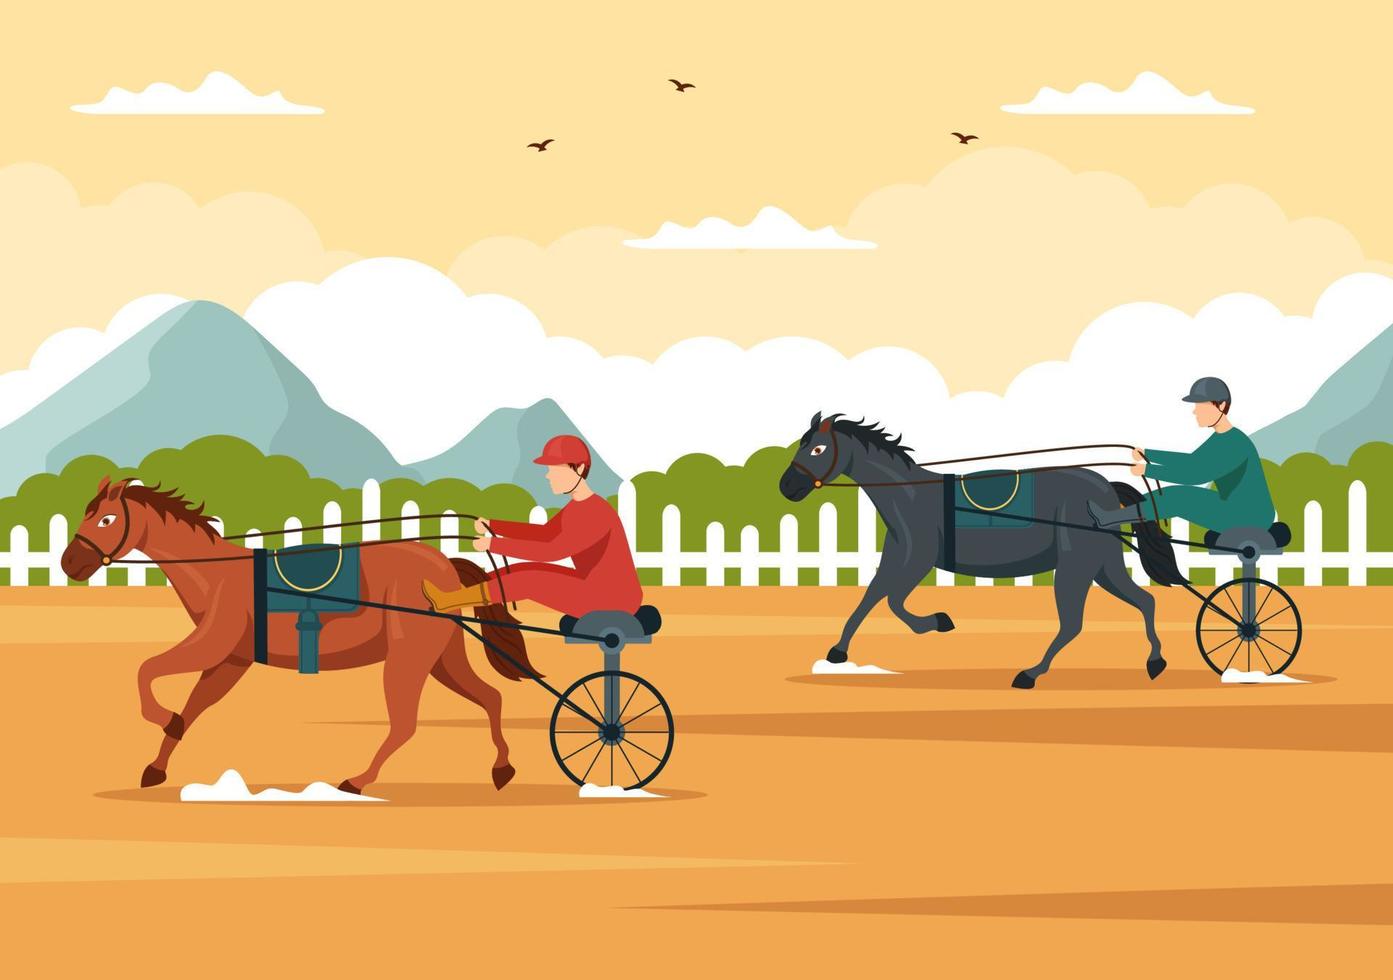 compétition de courses de chevaux dans un hippodrome avec sport de performance équestre et cavalier ou jockeys sur illustration de modèles dessinés à la main de dessin animé plat vecteur